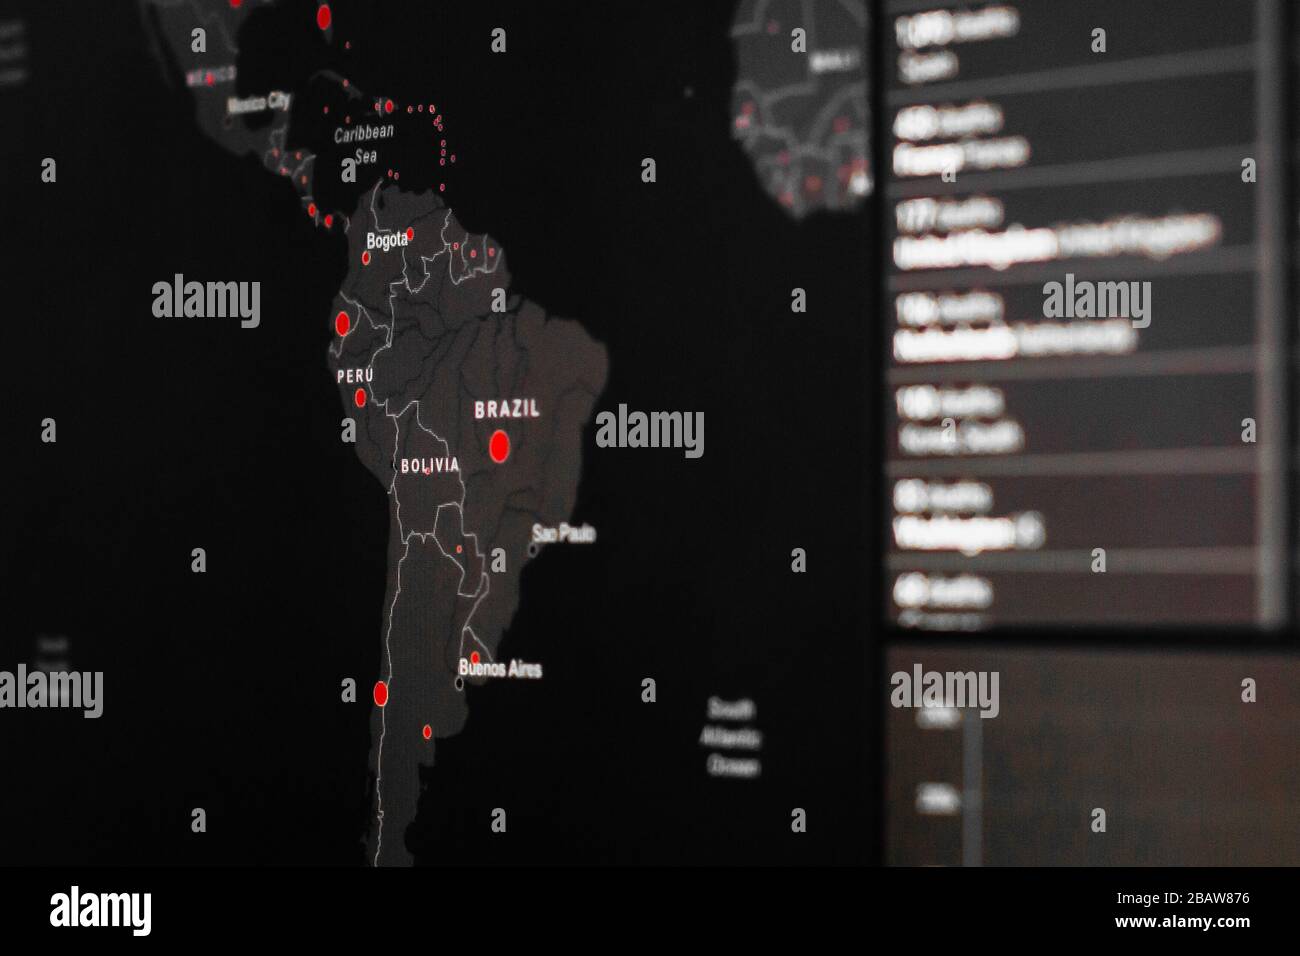 Mapa de Brasil y Perú del Coronavirus, SARS-COV2. Casos confirmados de enfermedad por coronavirus en el mundo. Informe a nivel mundial sobre COVID-19 Foto de stock